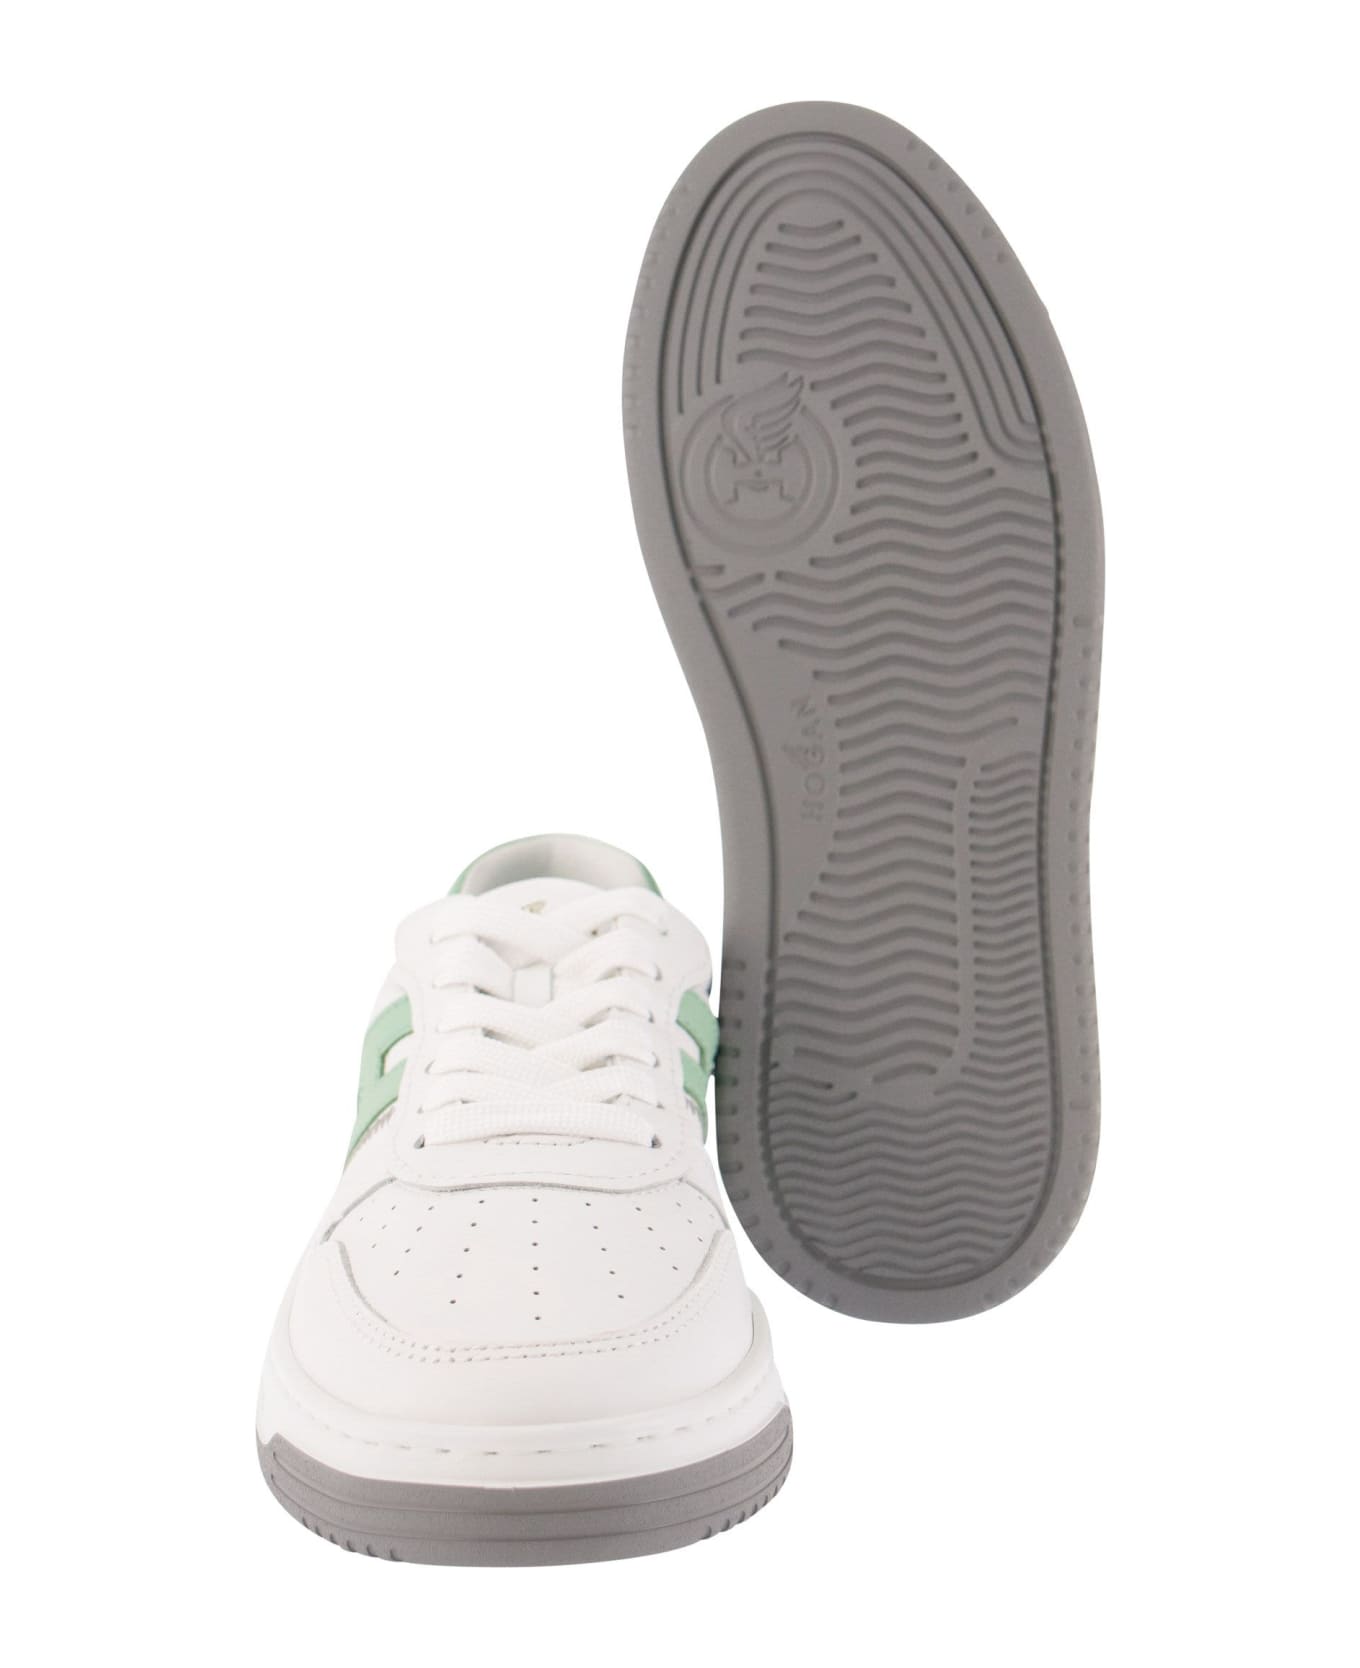 Hogan Sneakers H630 - White/green スニーカー